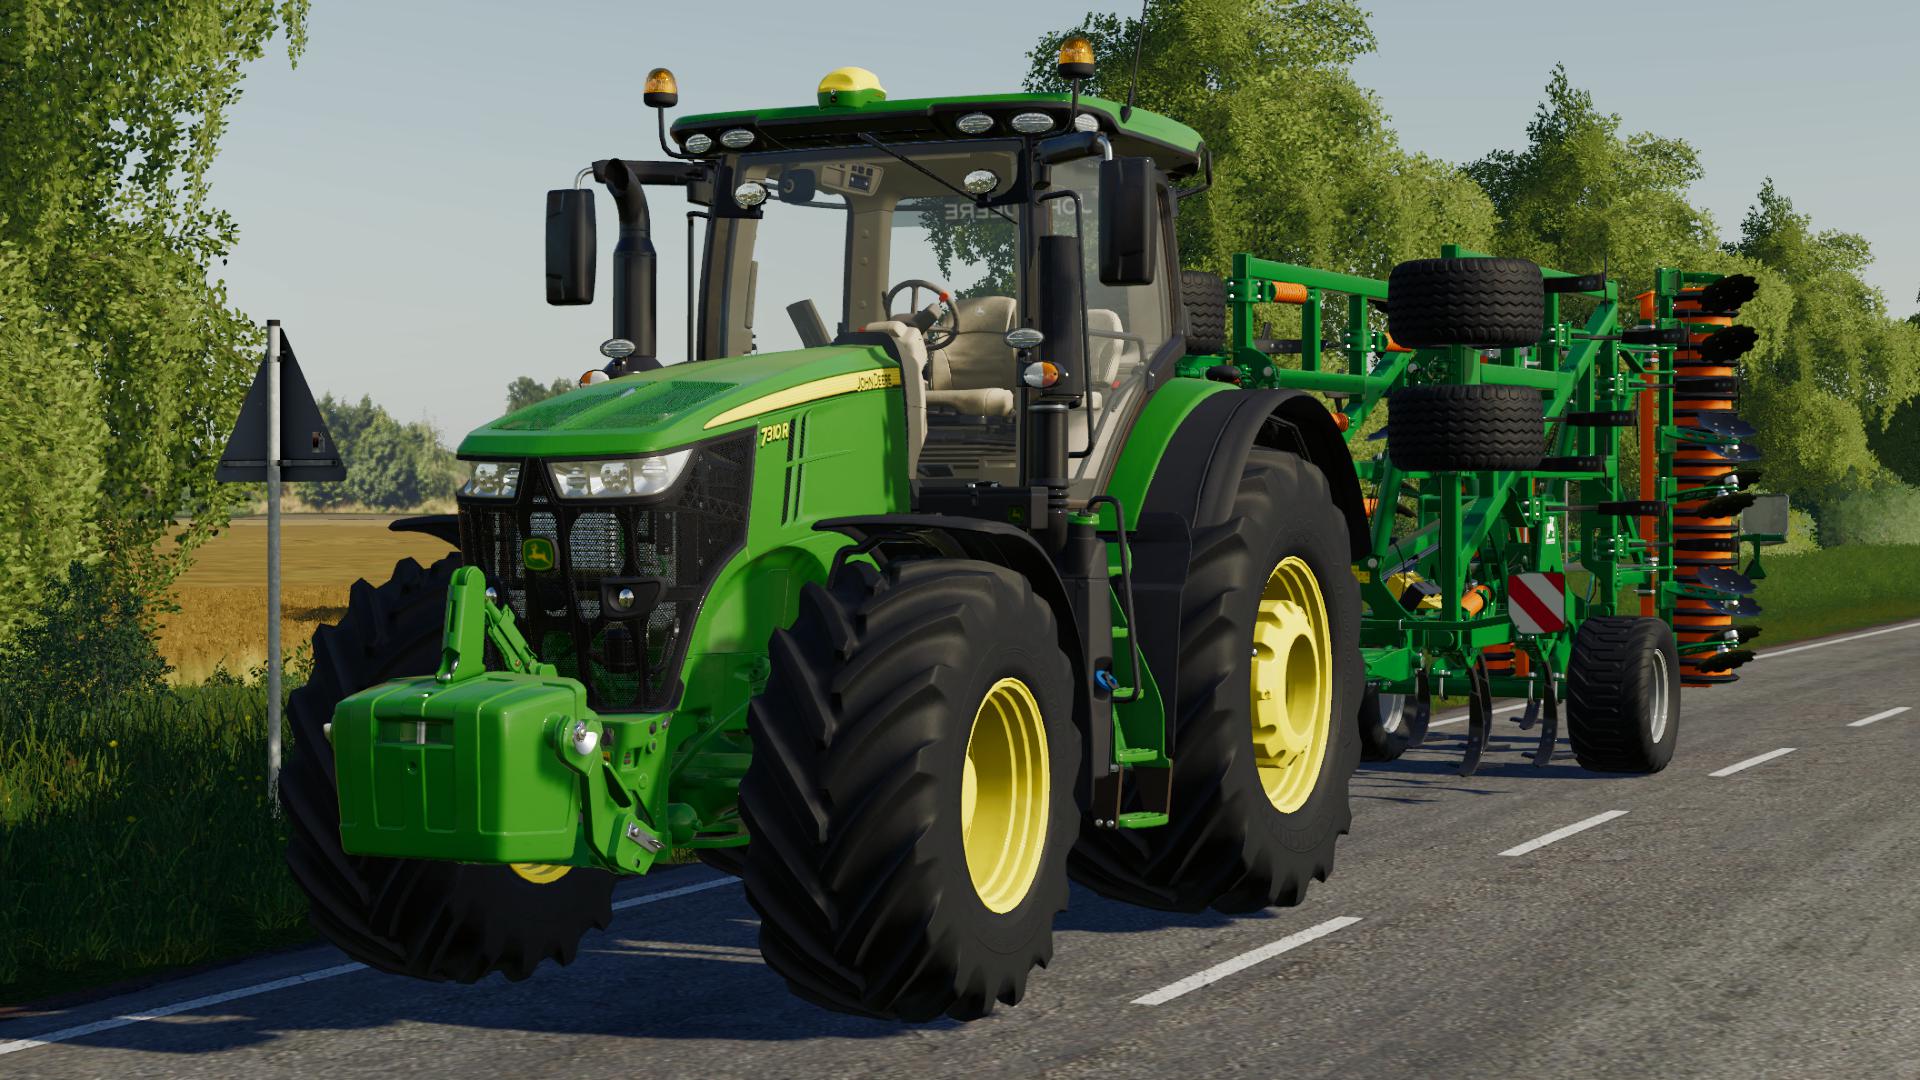 John Deere 7r 2014 V1000 Fs19 Farming Simulator 22 мод Fs 19 МОДЫ